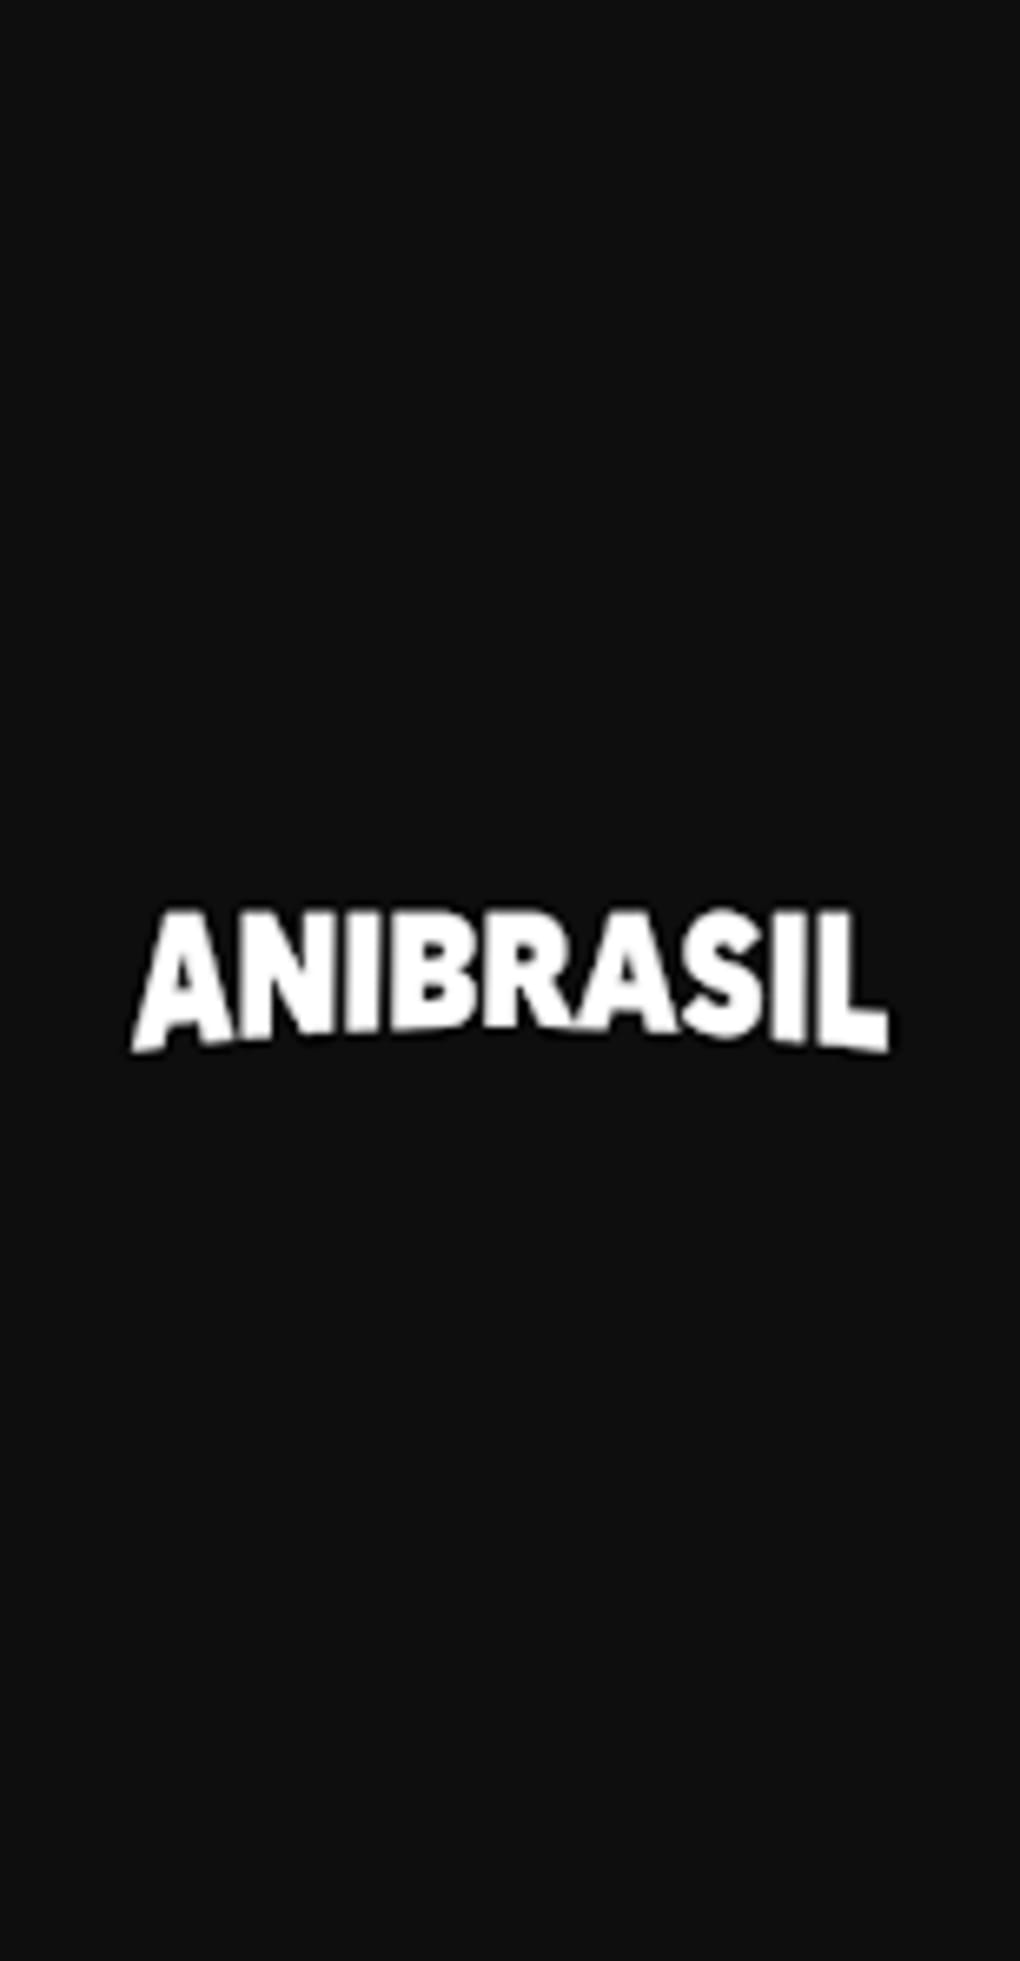 Animes Brasil - Full HD Animes APK (Android App) - Baixar Grátis